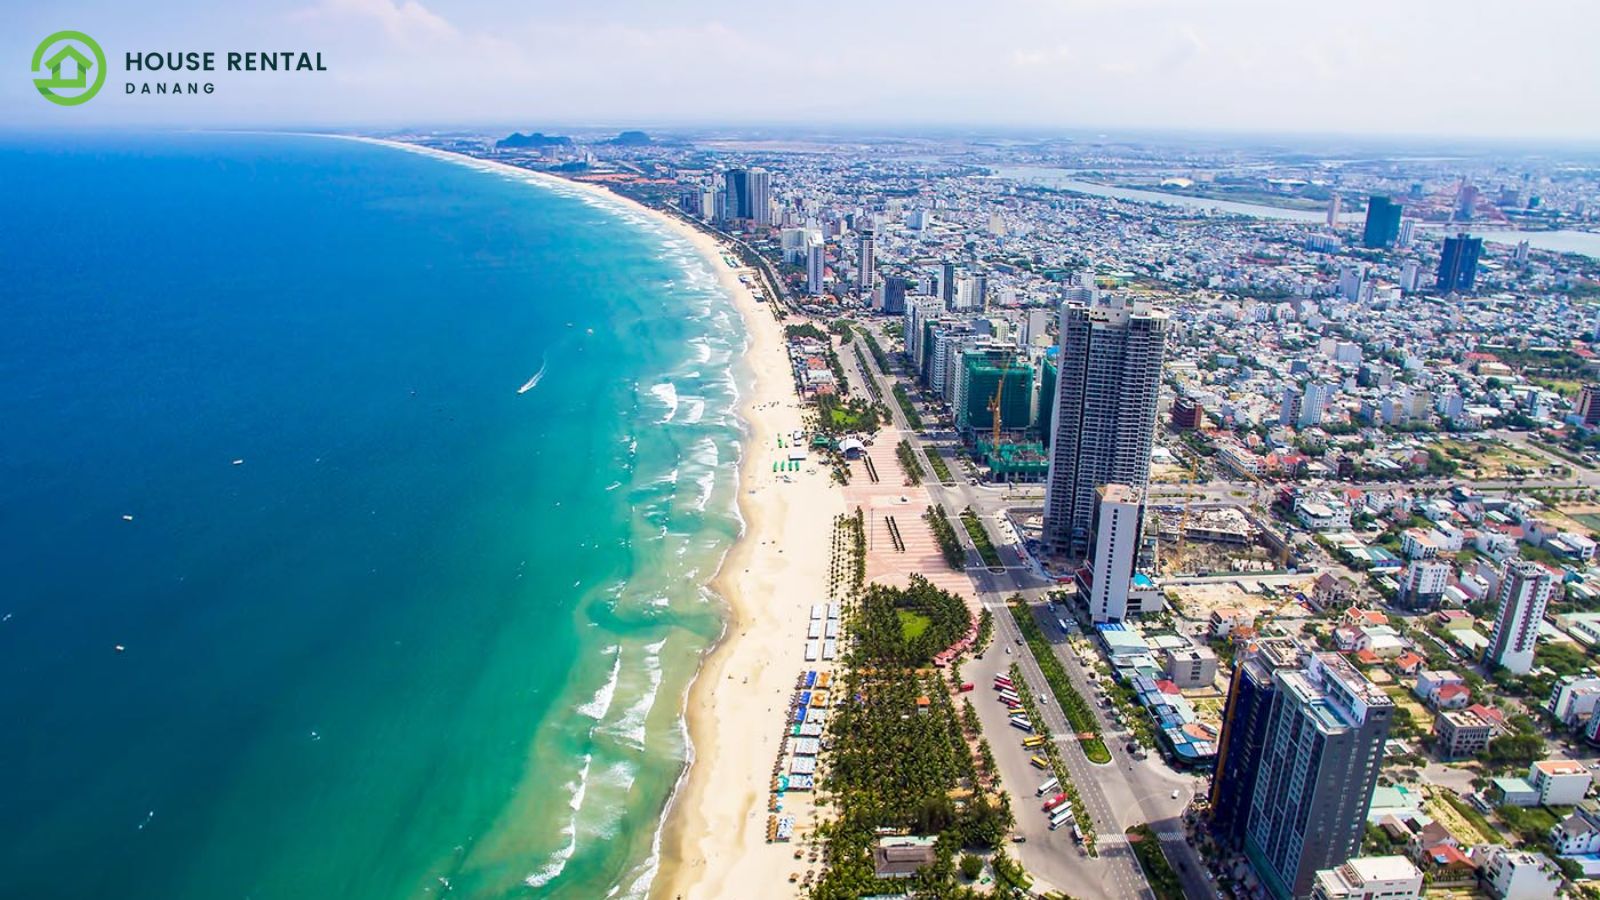 An aerial view of a beach city.